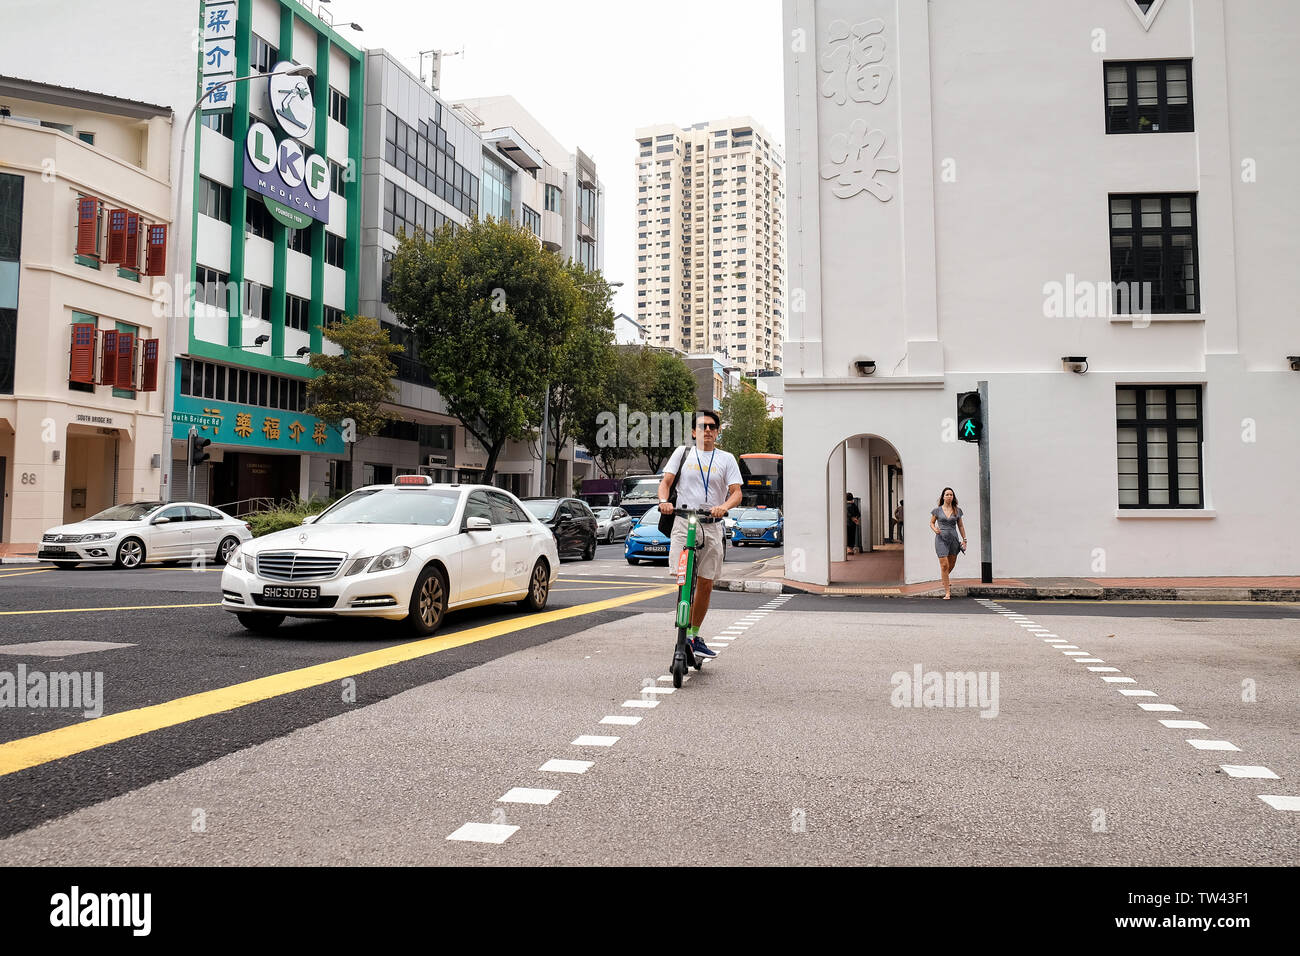 Ein alter Mann in Shorts, T-Shirt und Sonnenbrille verwendet einen elektronischen Roller eine Kreuzung in Singapur zu überqueren. Stockfoto